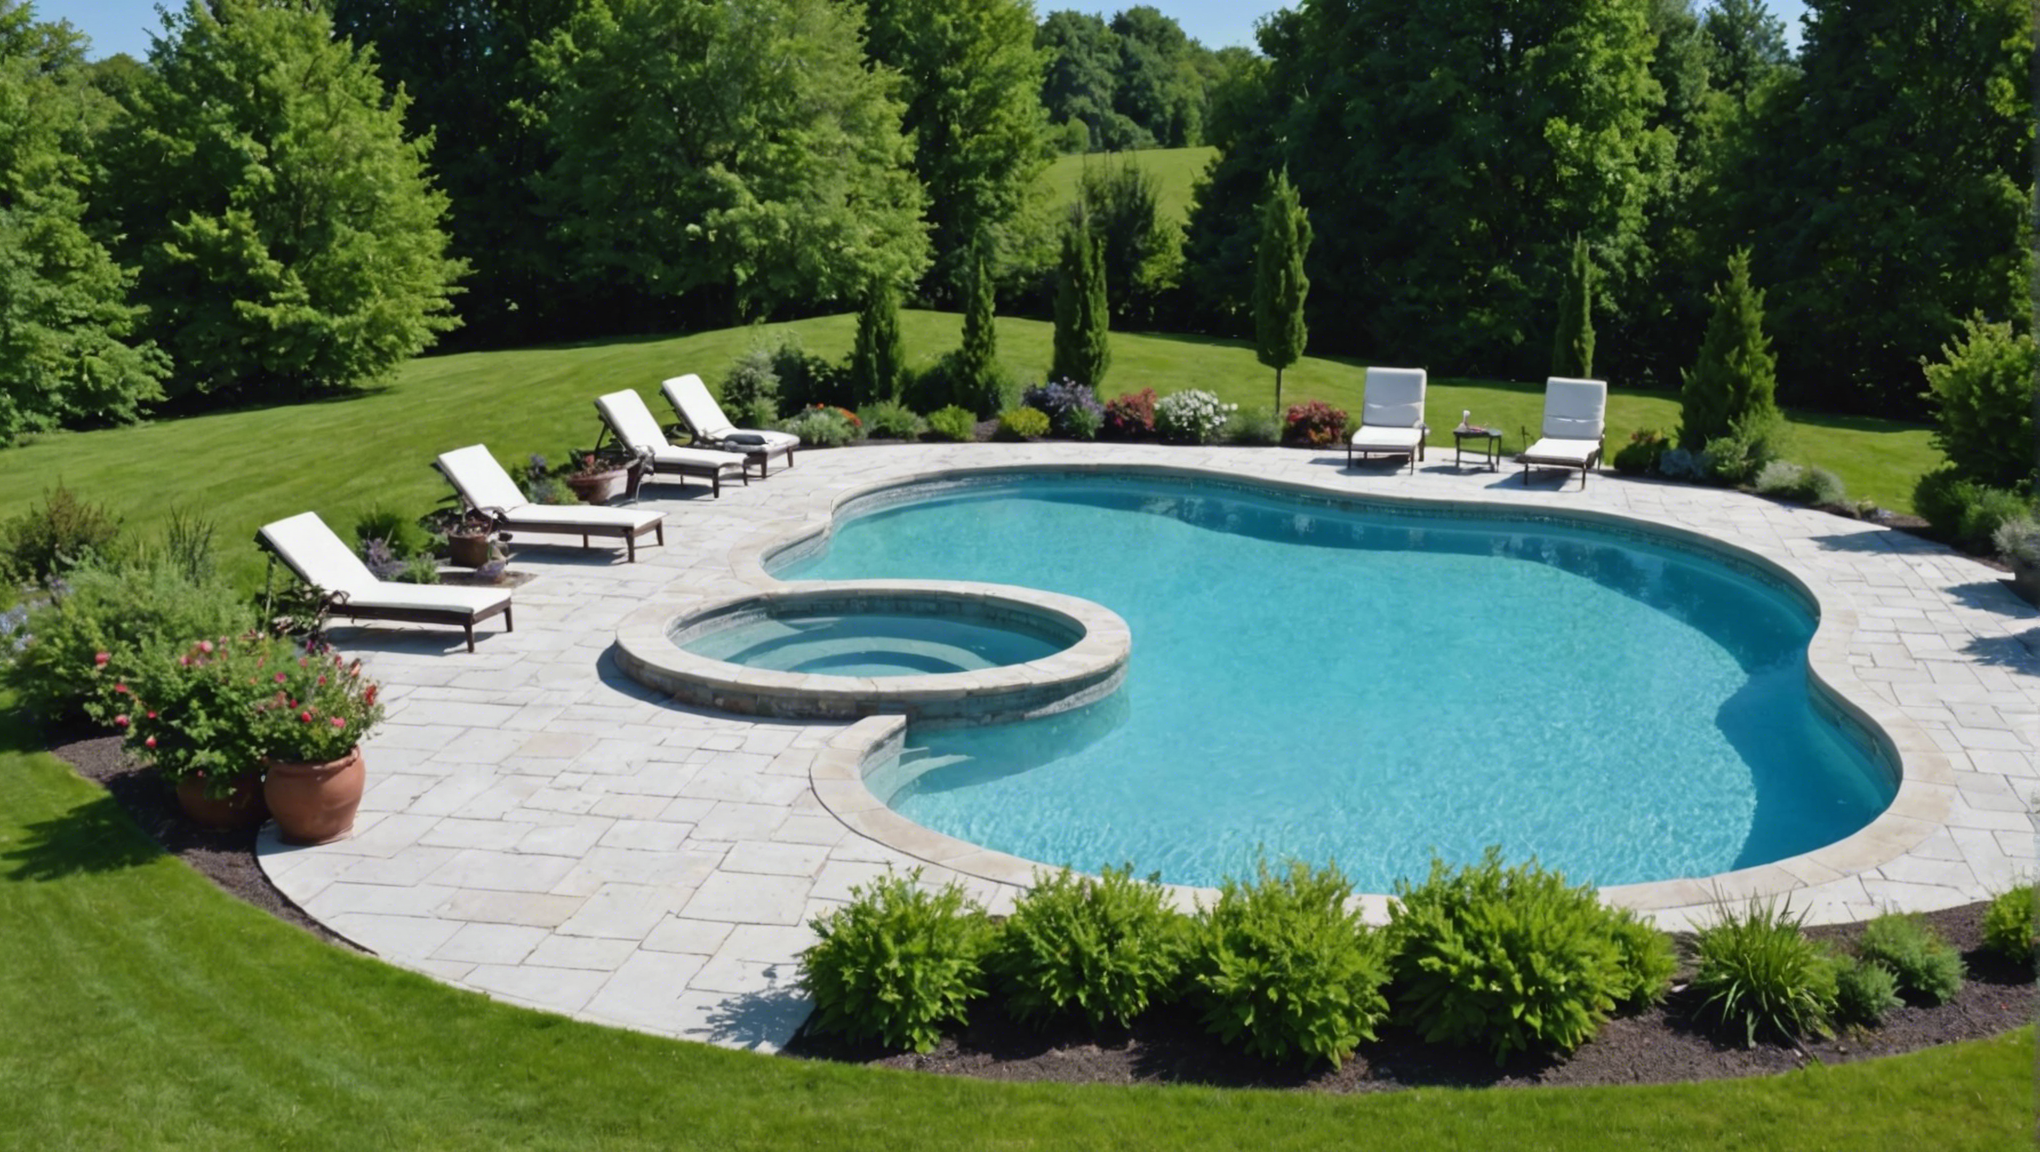 découvrez comment concevoir un aménagement paysager harmonieux autour de votre piscine avec nos astuces et conseils pratiques.